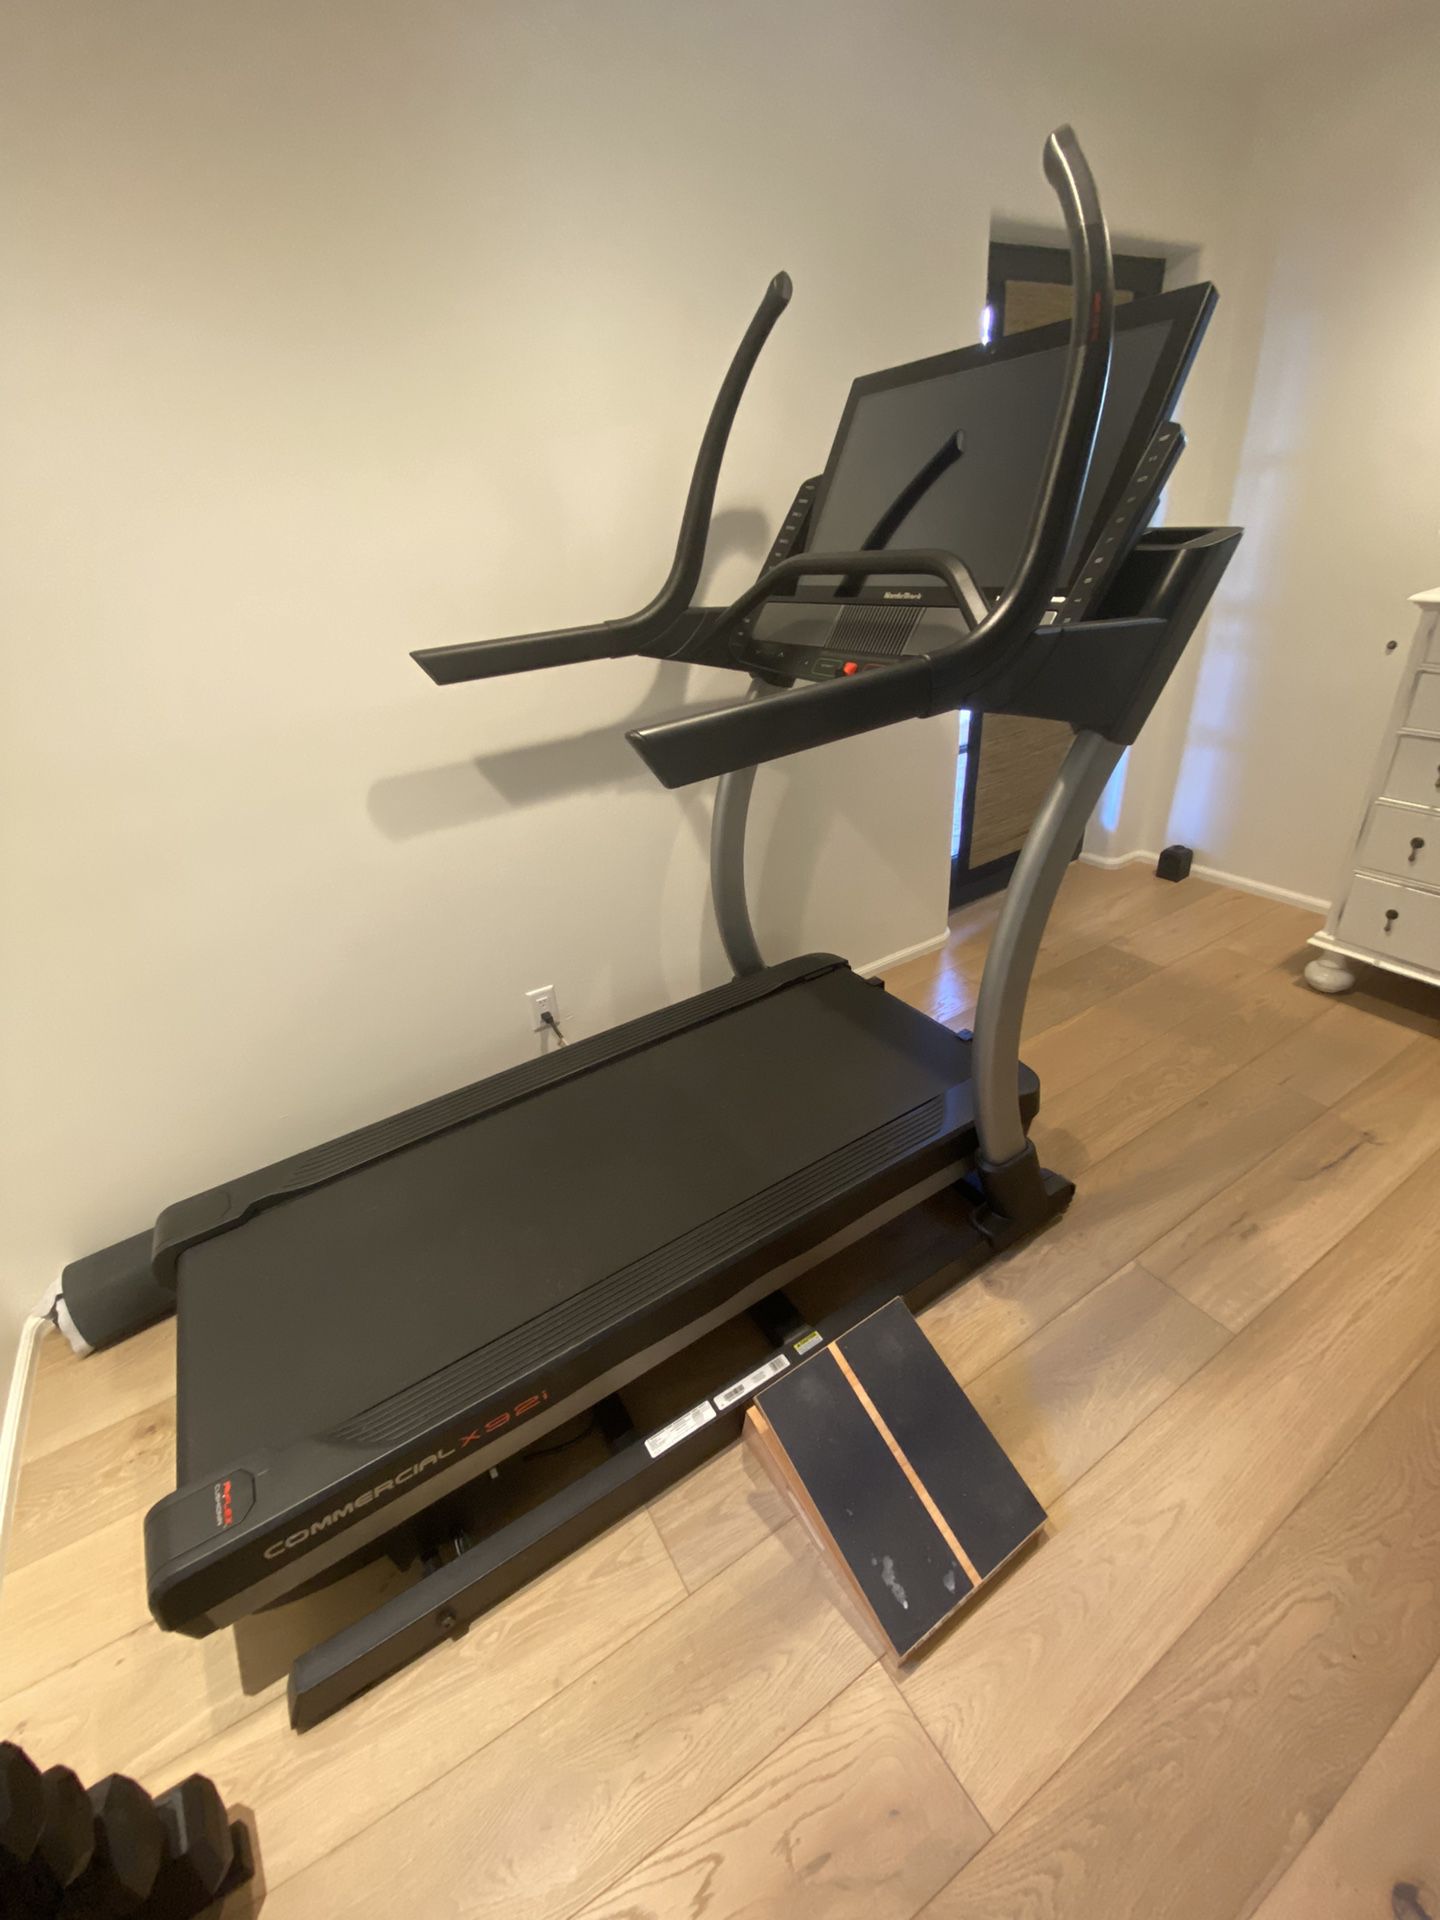 Nordictrack Commercial x32i Treadmill